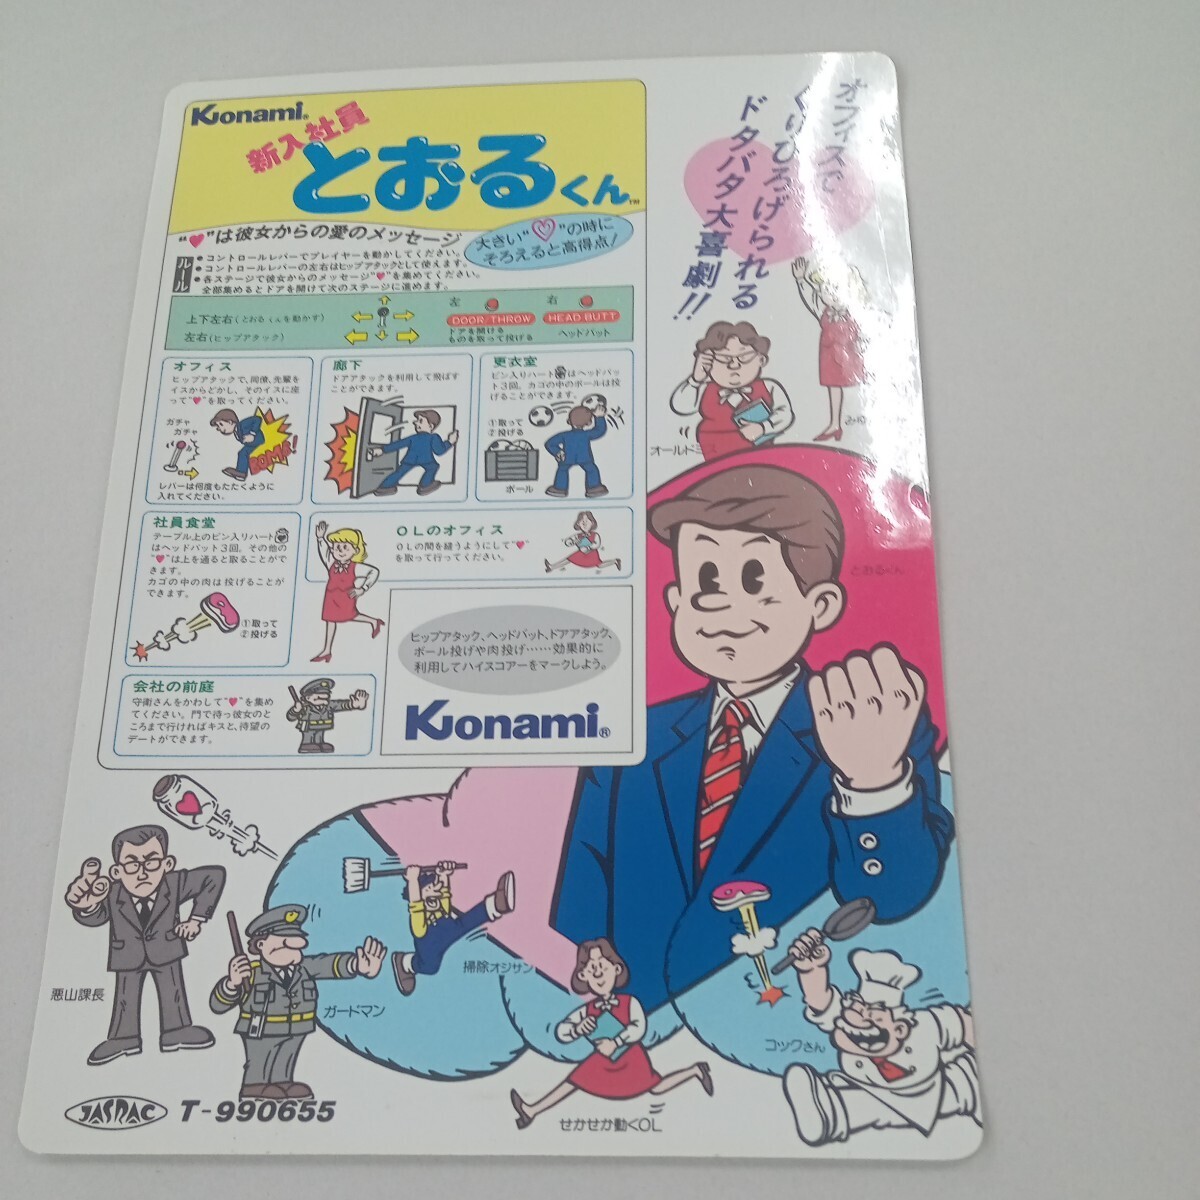  Konami новый входить фирма участник ... kun instrument карта 2 листов 